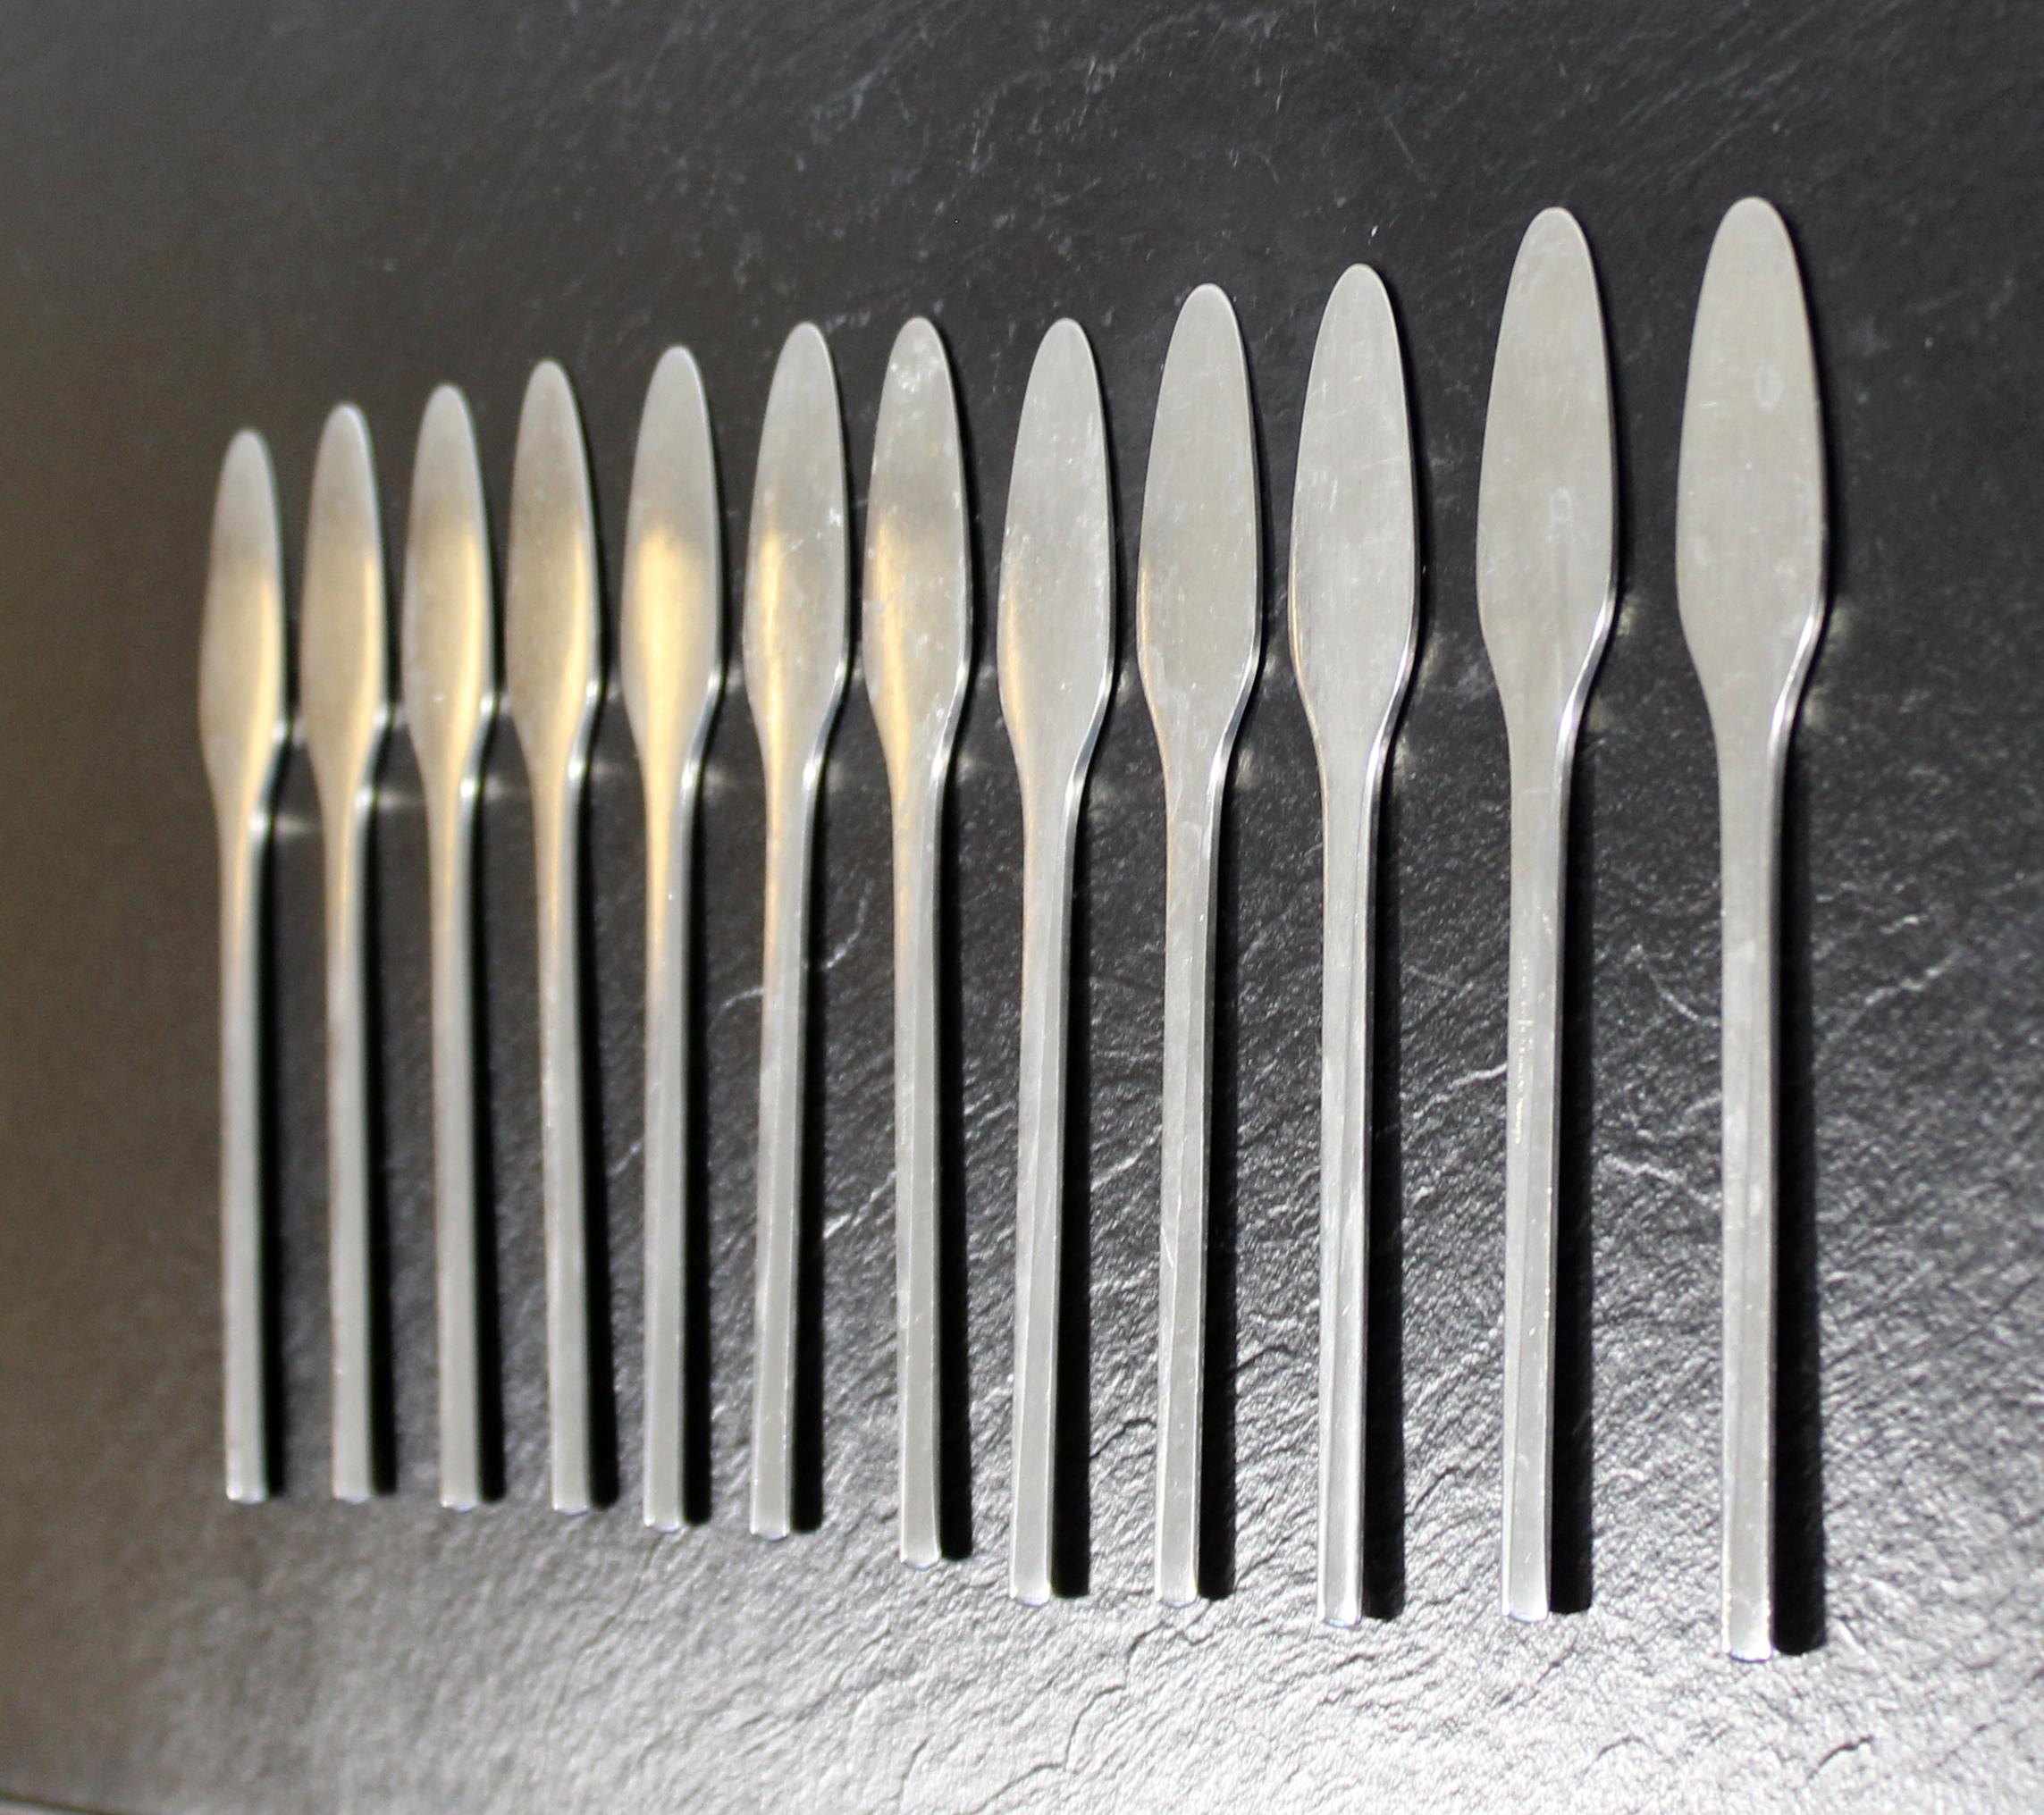 Danish Mid-Century Modern Georg Jensen Prism Stainless Steel Butter Knives, Denmark